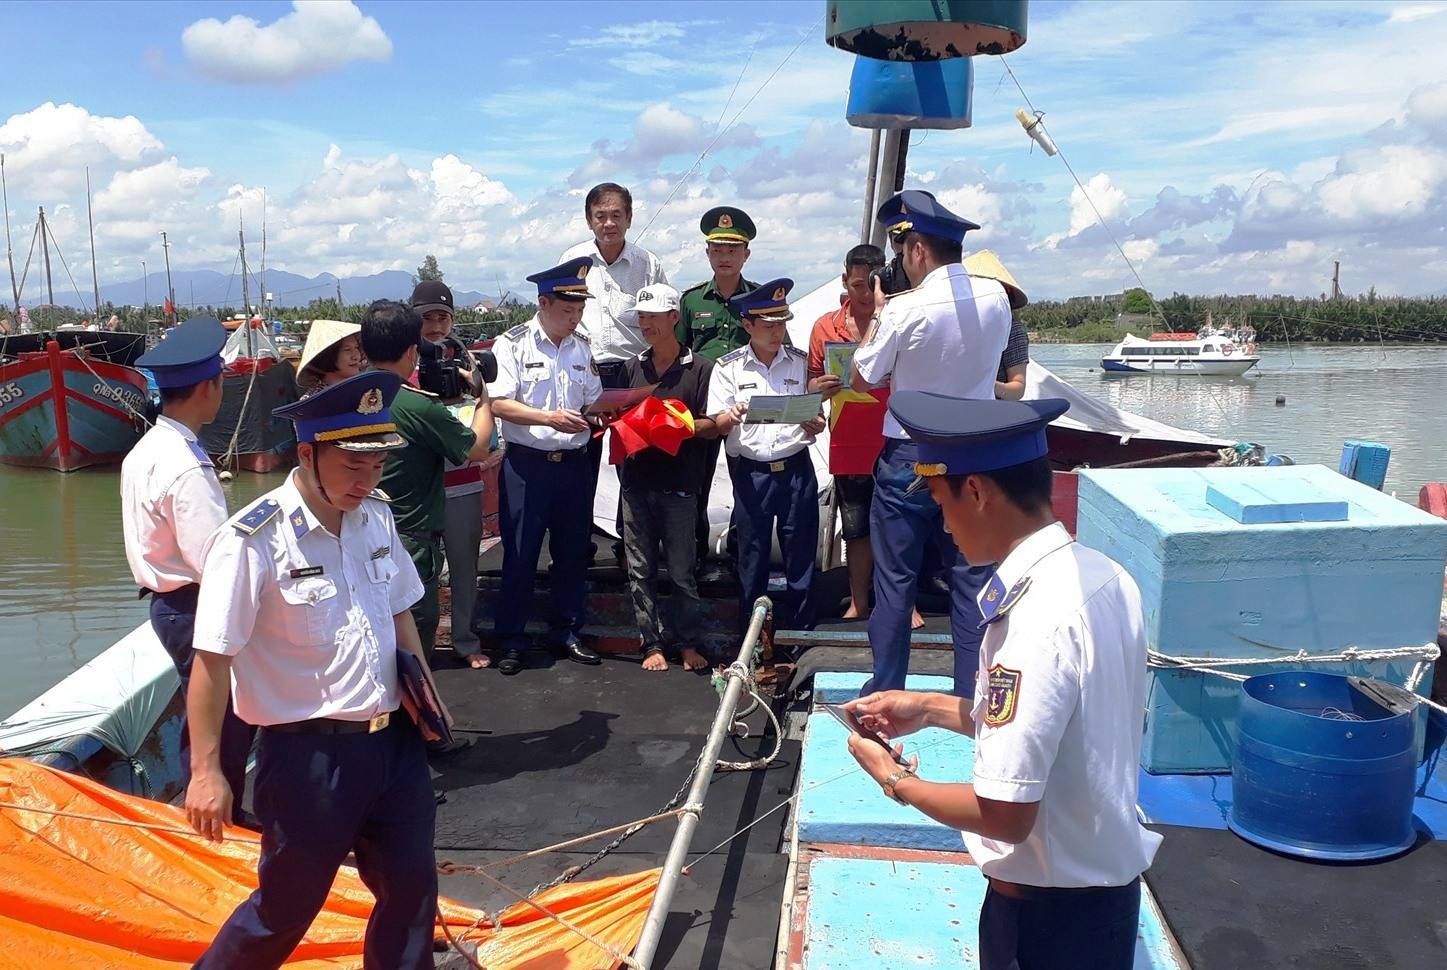 TP.Hội An phối hợp với Vùng Cảnh sát biển 2 tổ chức các hoạt động tuyên truyền, giáo dục ngư dân thực hiện chống khai thác IUU và bảo vệ chủ quyền biển đảo.